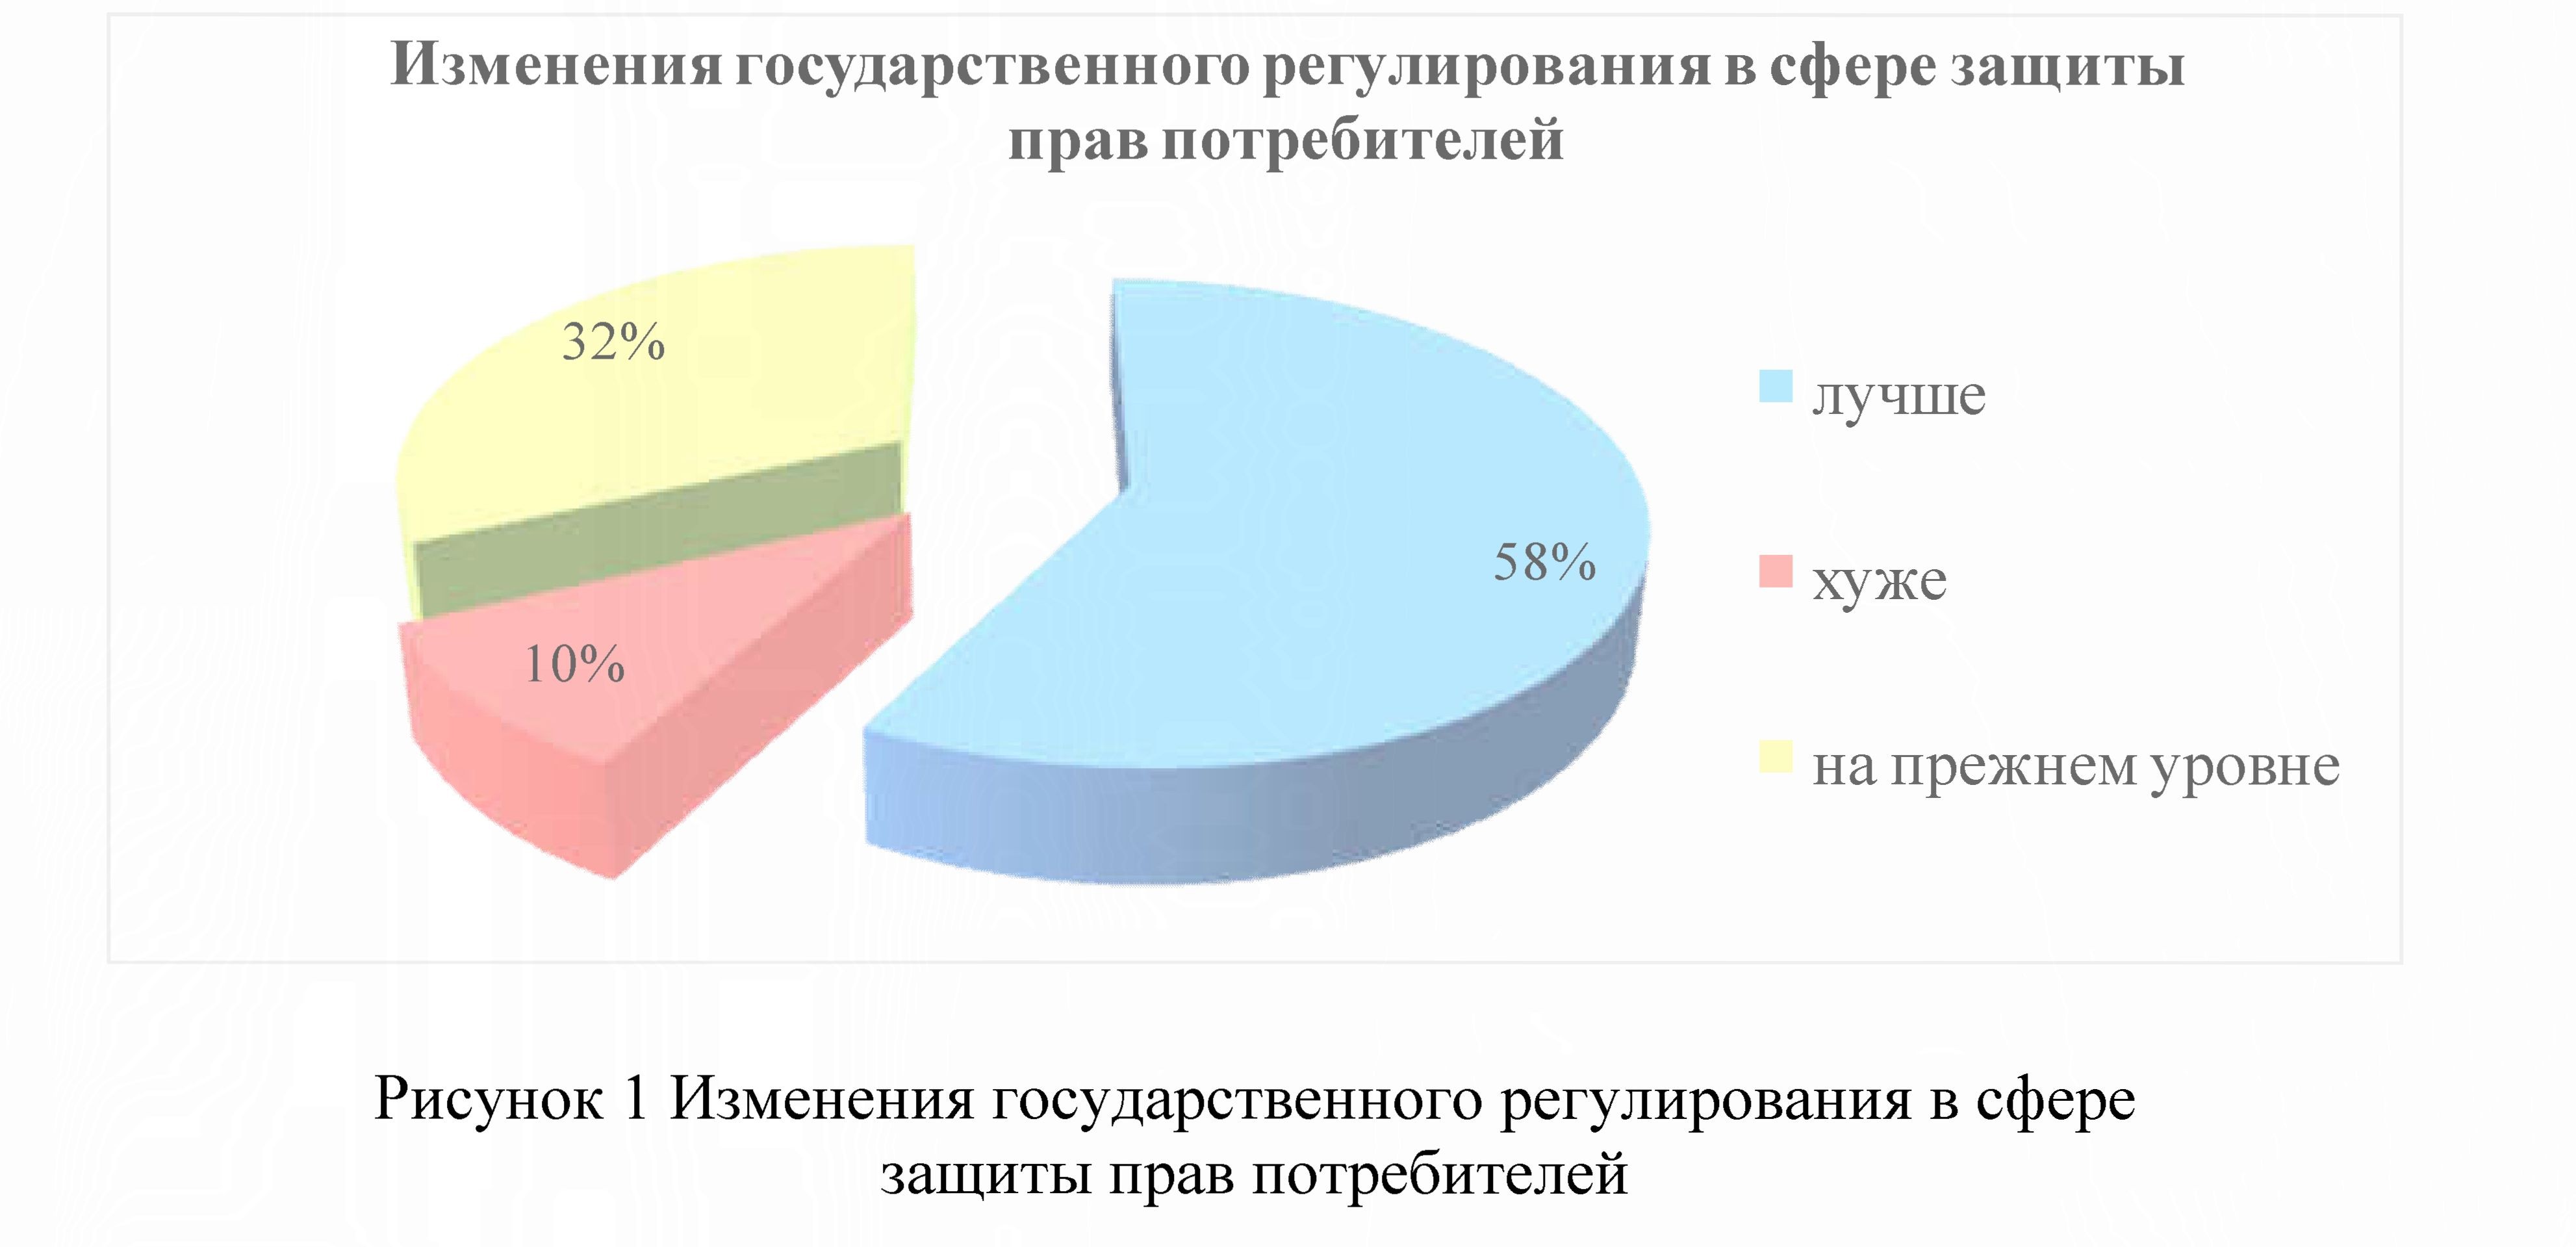 К вопросу о защите прав потребителей в республике Казахстан